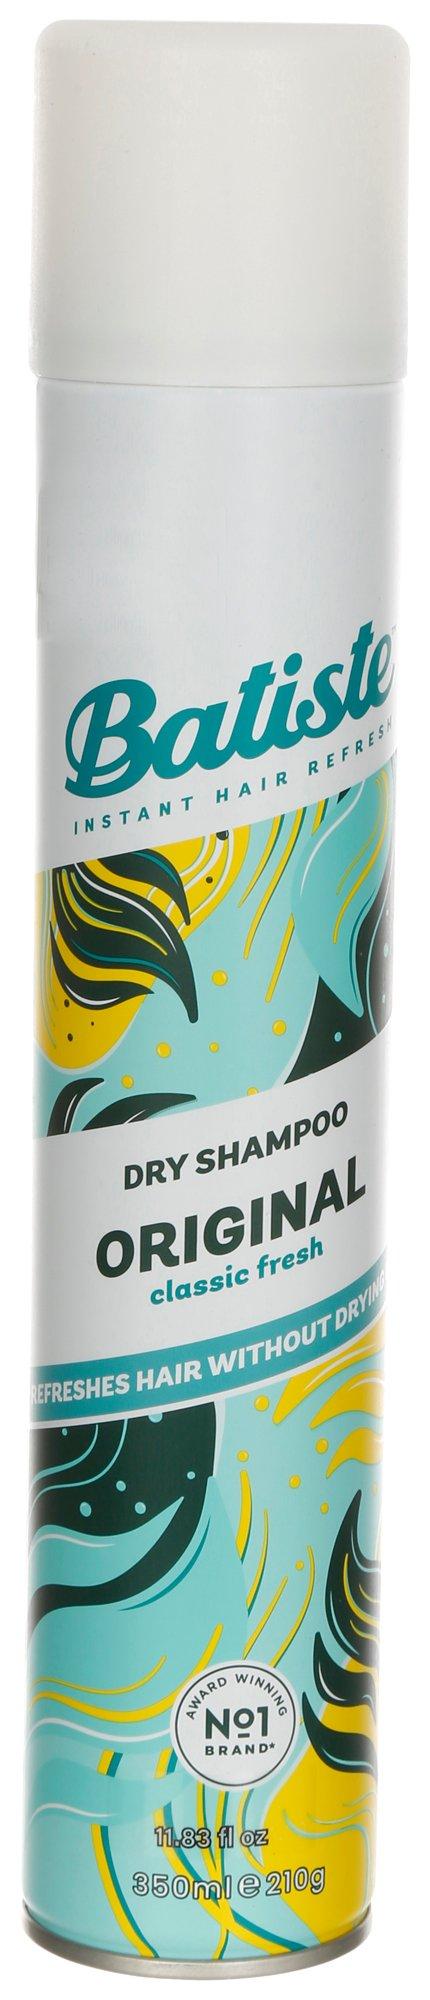 11.8 oz Classic Fresh Dry Shampoo